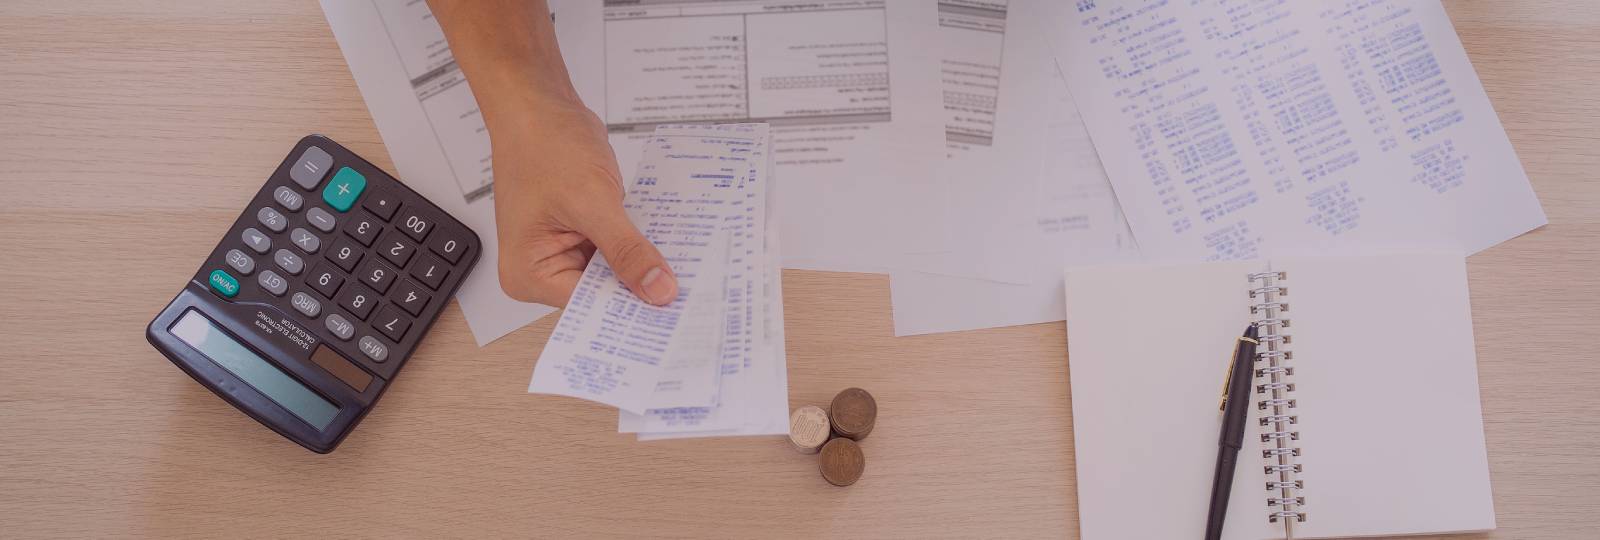 Bizkaia mejora los aplazamientos automáticos y sin garantías en el pago de impuestos